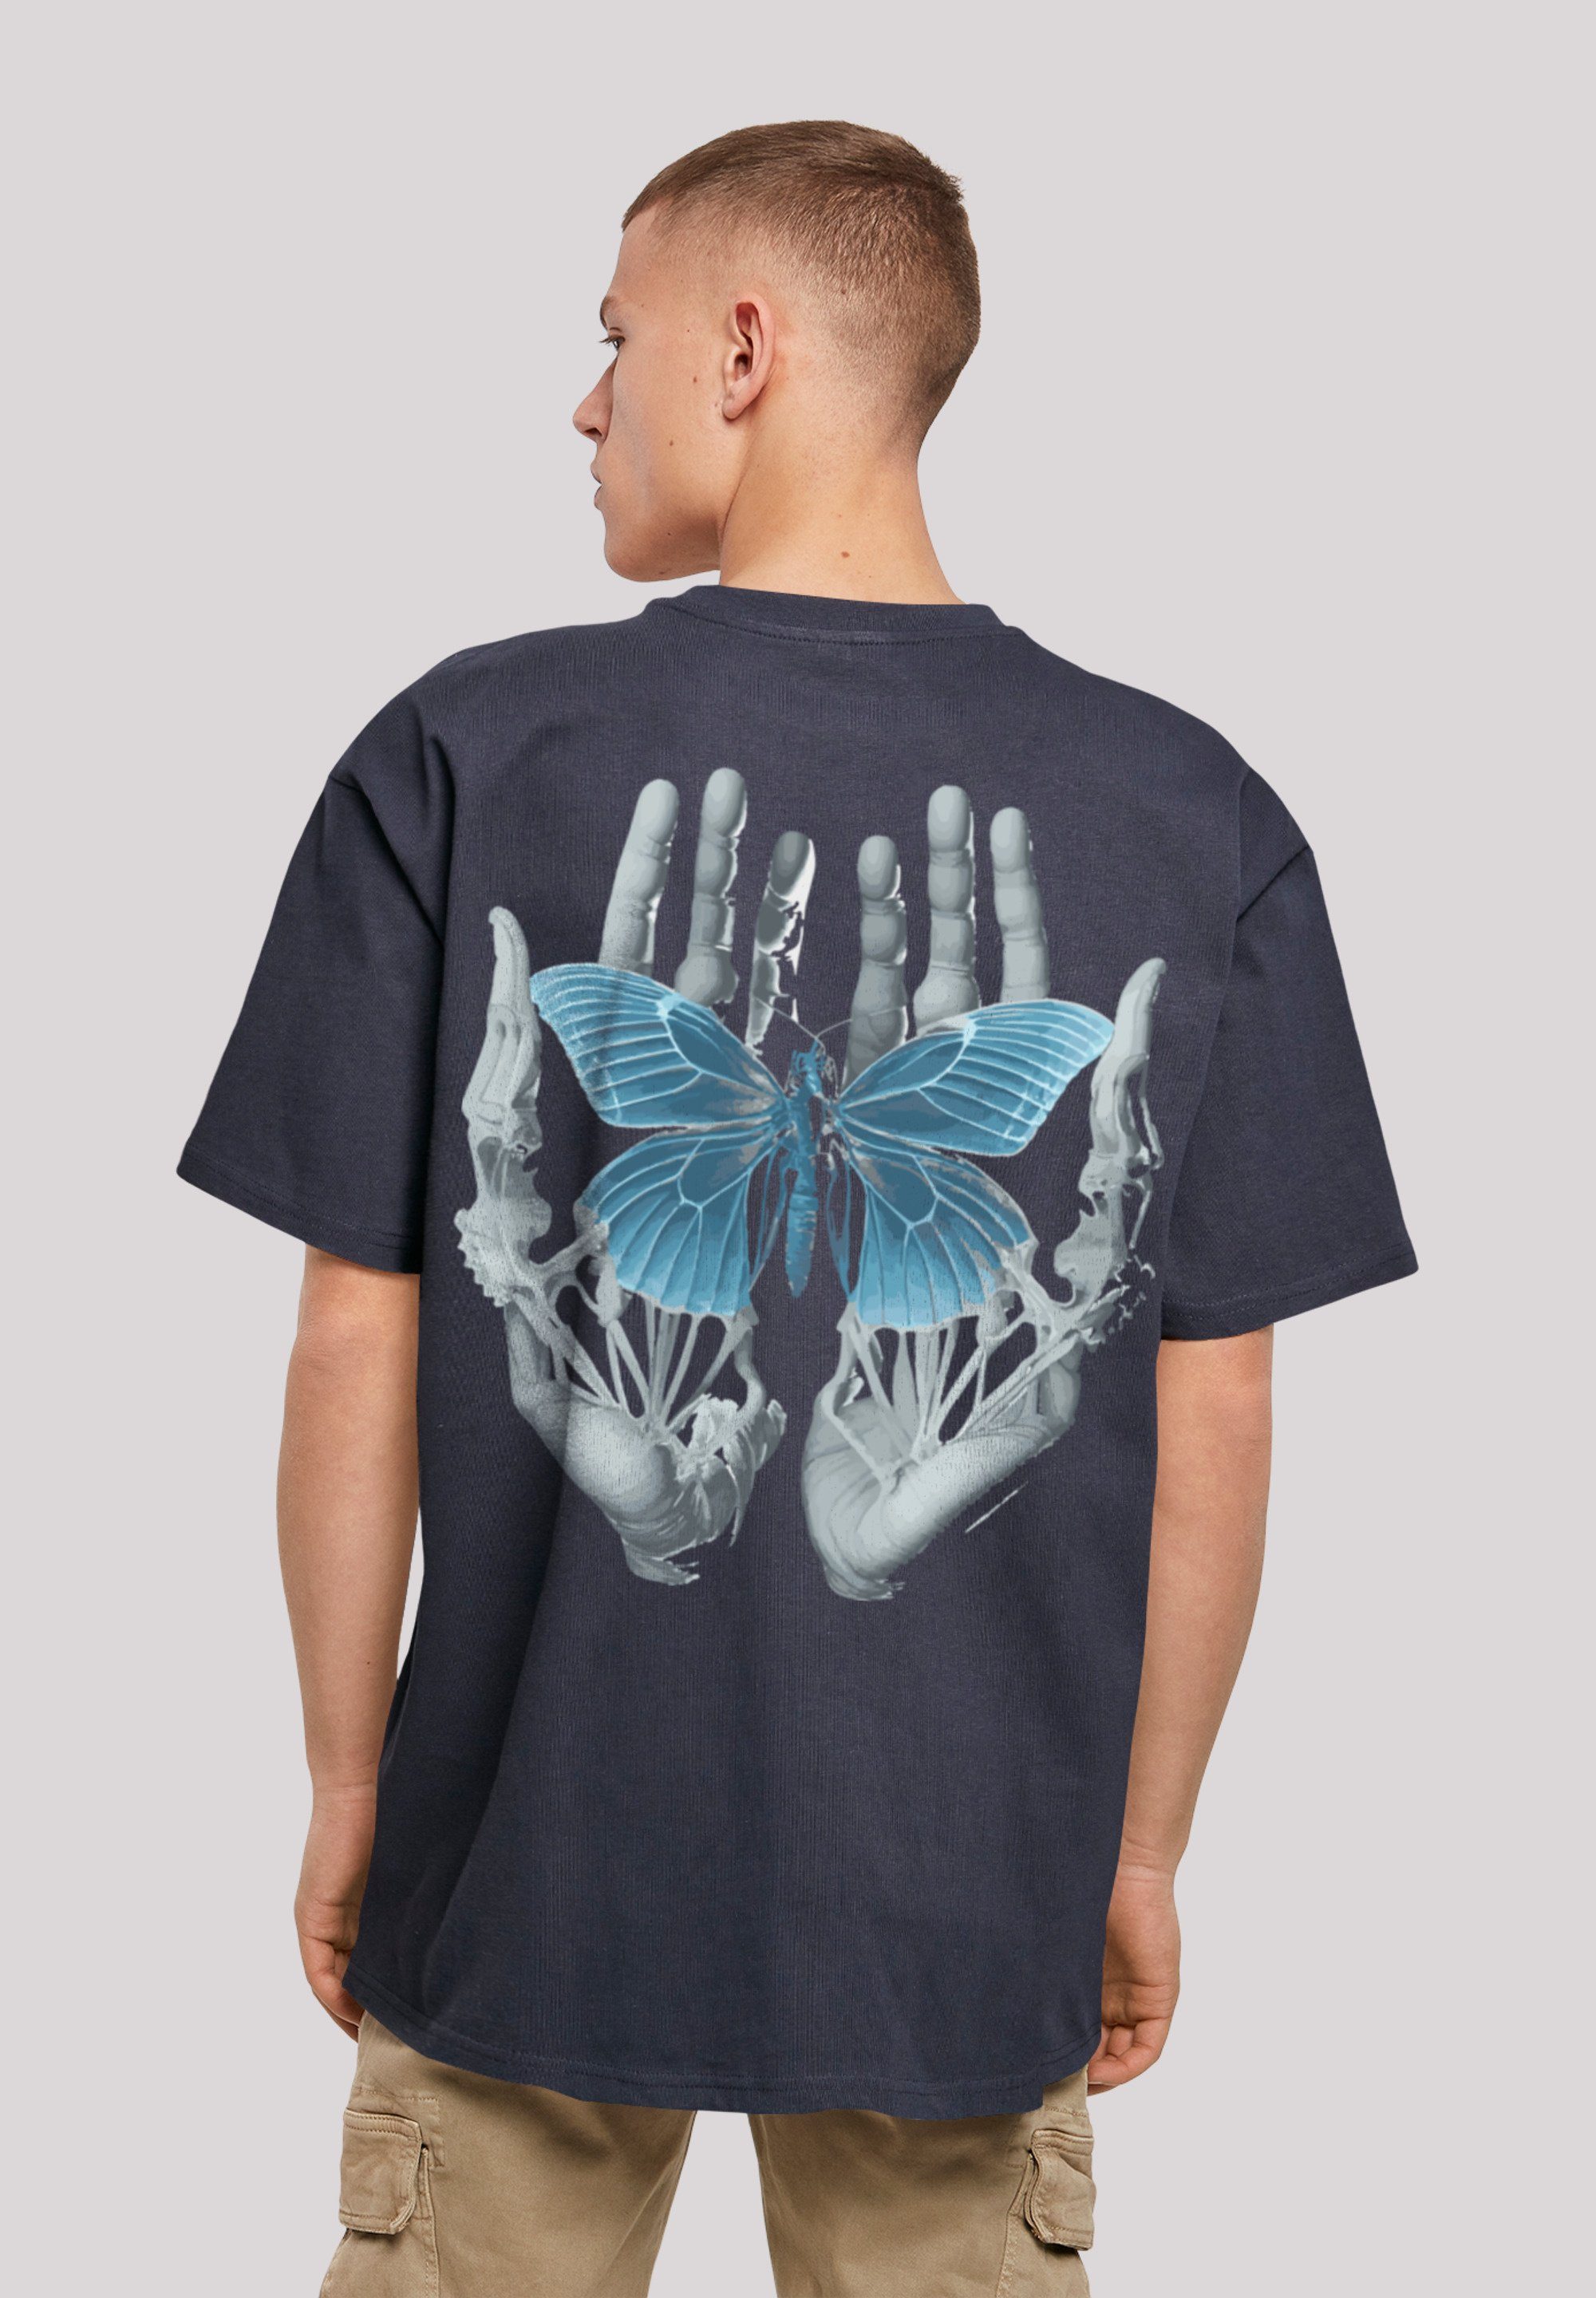 F4NT4STIC T-Shirt Skelett Hände Schmetterling Print, Fällt weit aus, bitte  eine Größe kleiner bestellen | Hoodies